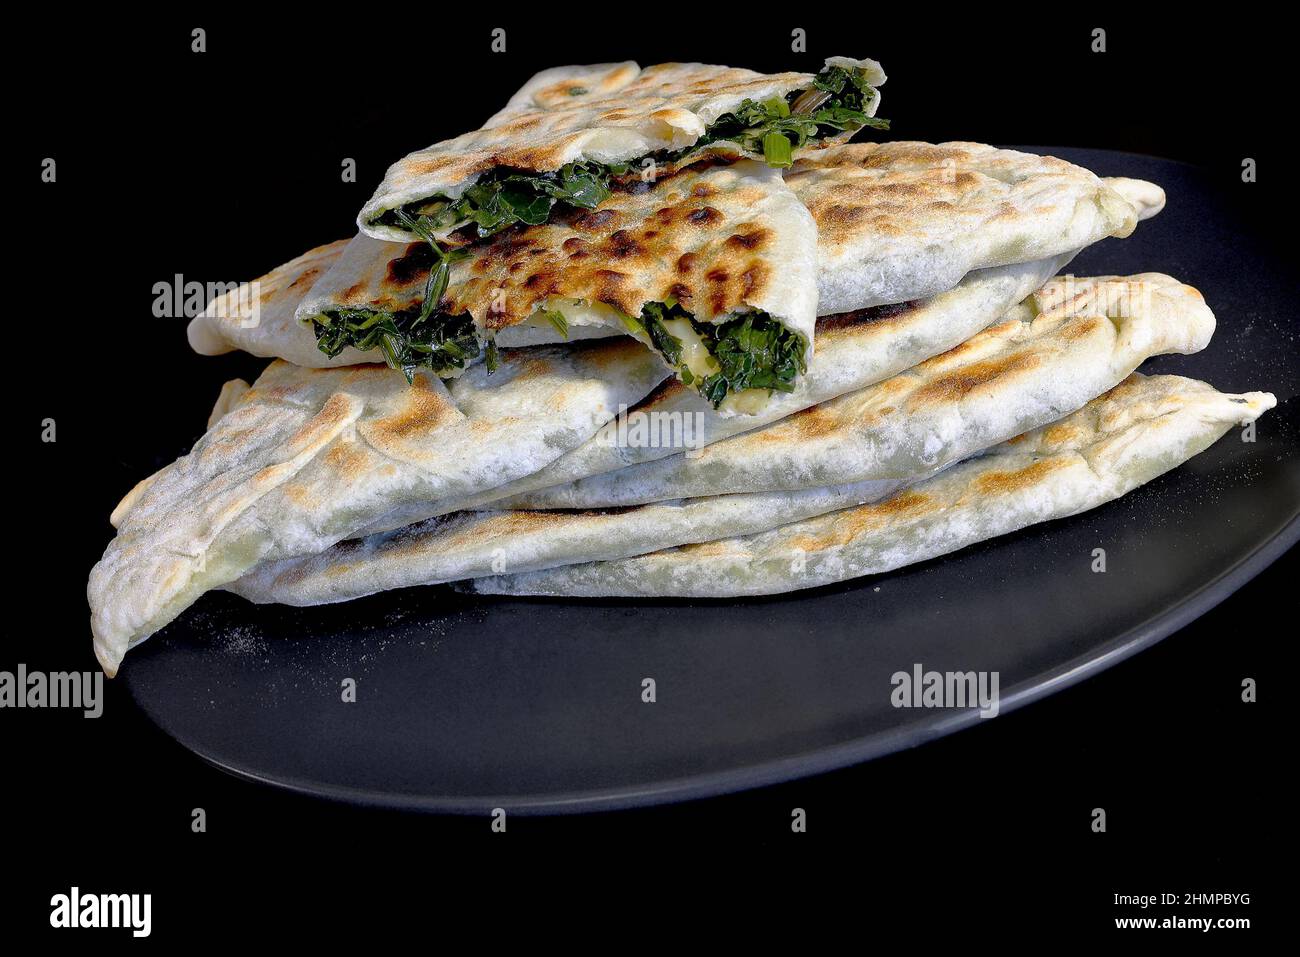 Backen traditioneller armenischer Gerichte - Zhengyal Brot. Brot mit verschiedenen Kräutern. Kreuzbruch von armenischem Zhengyal-Brot mit geringer Tiefe von f Stockfoto